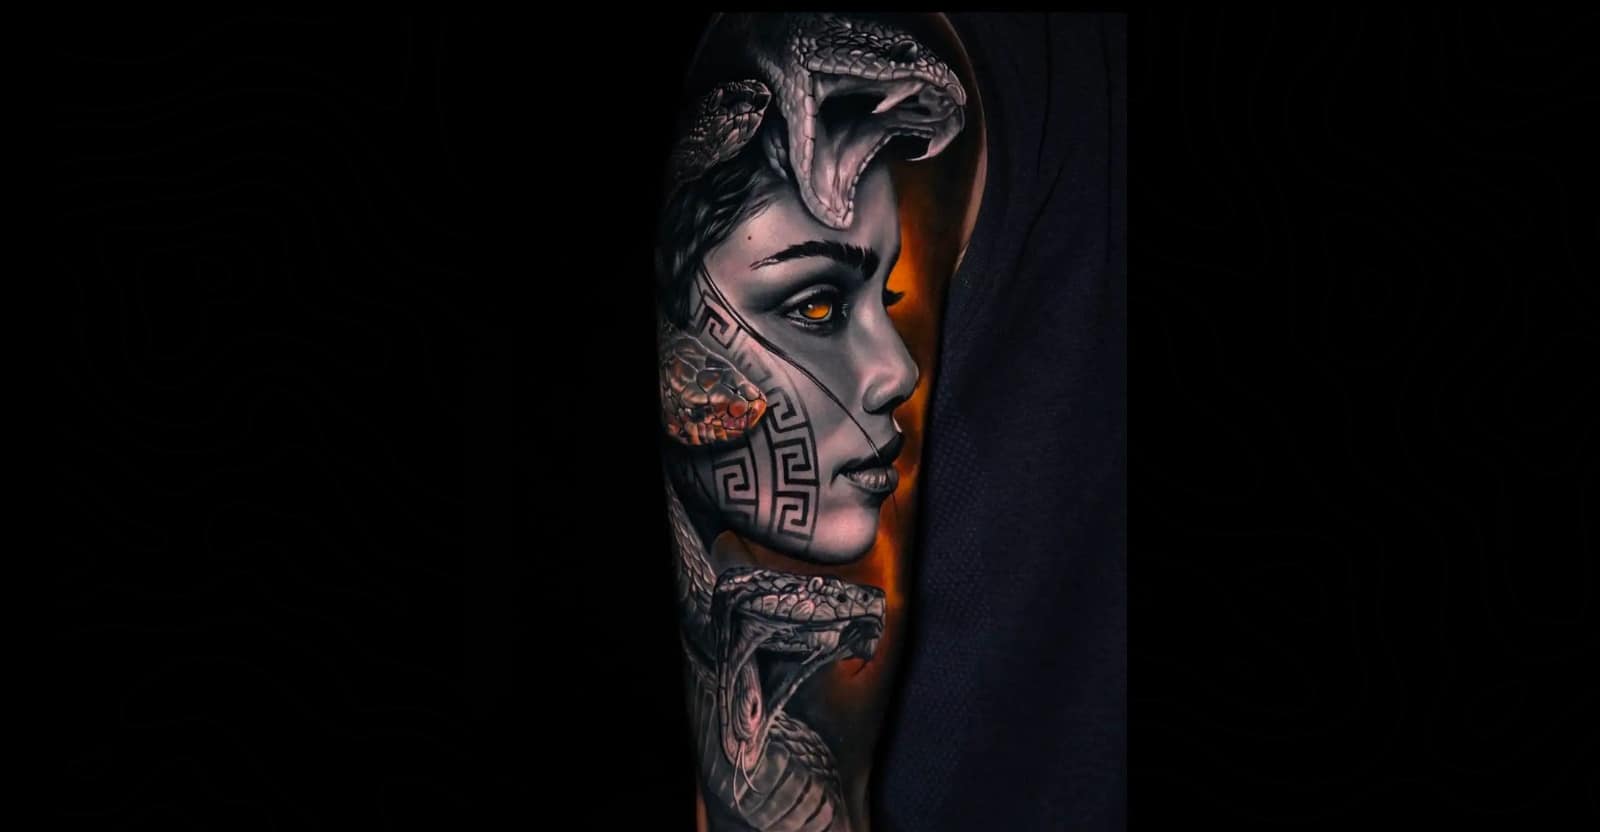 Greek Mythology sleeve  Medusa by MarieMichelle  MMC Tattoo Winnipeg  MB  rtattoos